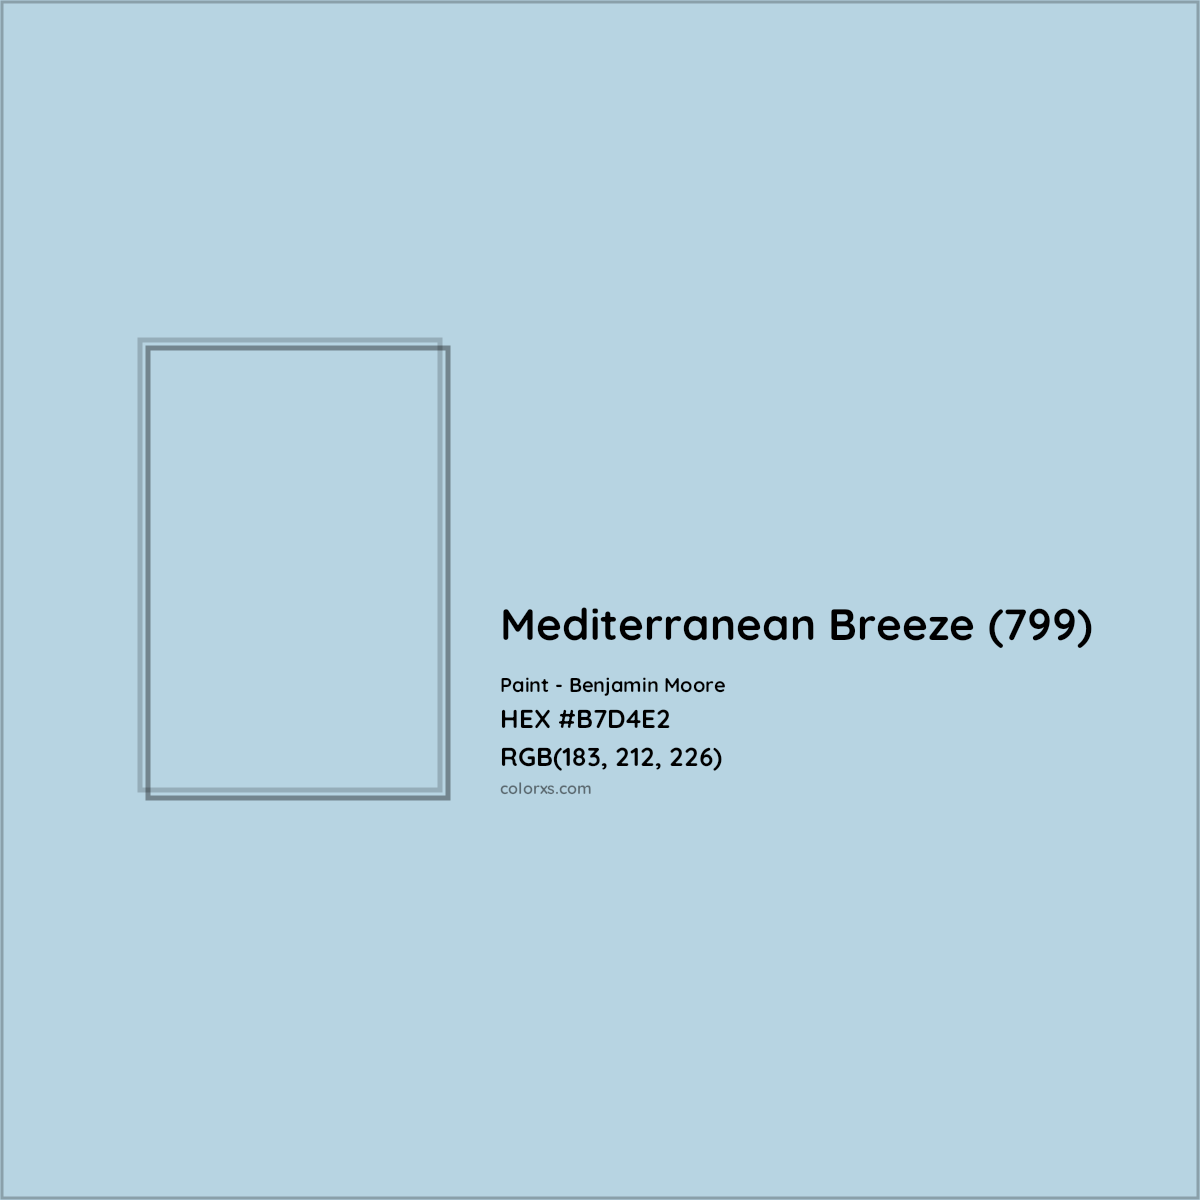 HEX #B7D4E2 Mediterranean Breeze (799) Paint Benjamin Moore - Color Code